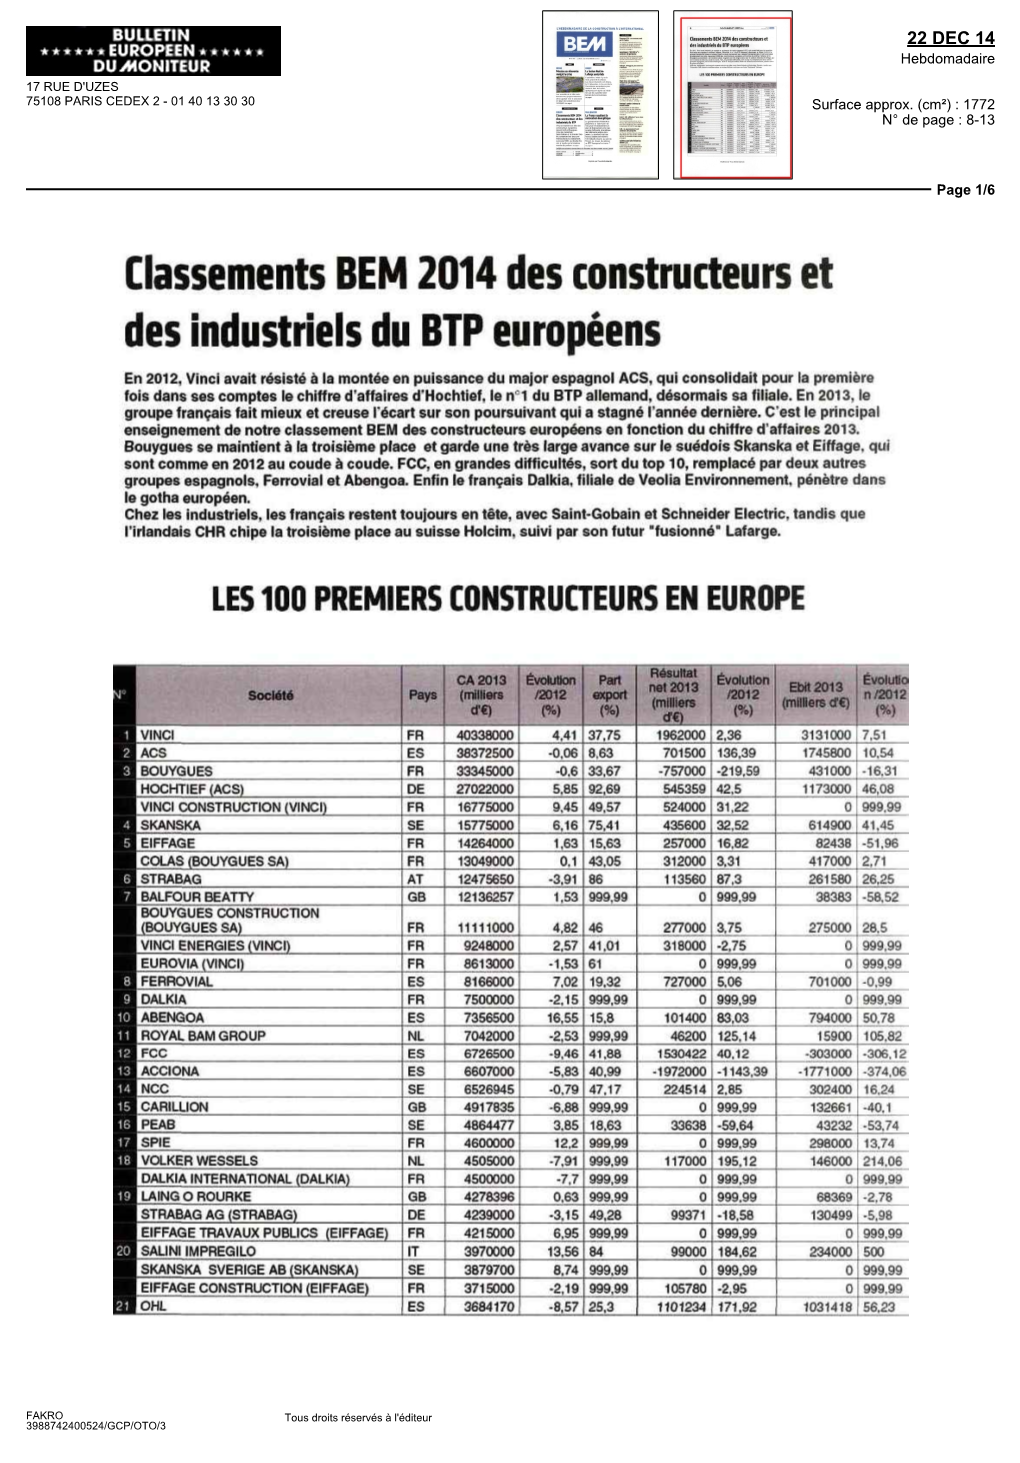 Classements BEM 2014 Des Constructeurs Et Des Industriels Du BTP Européens